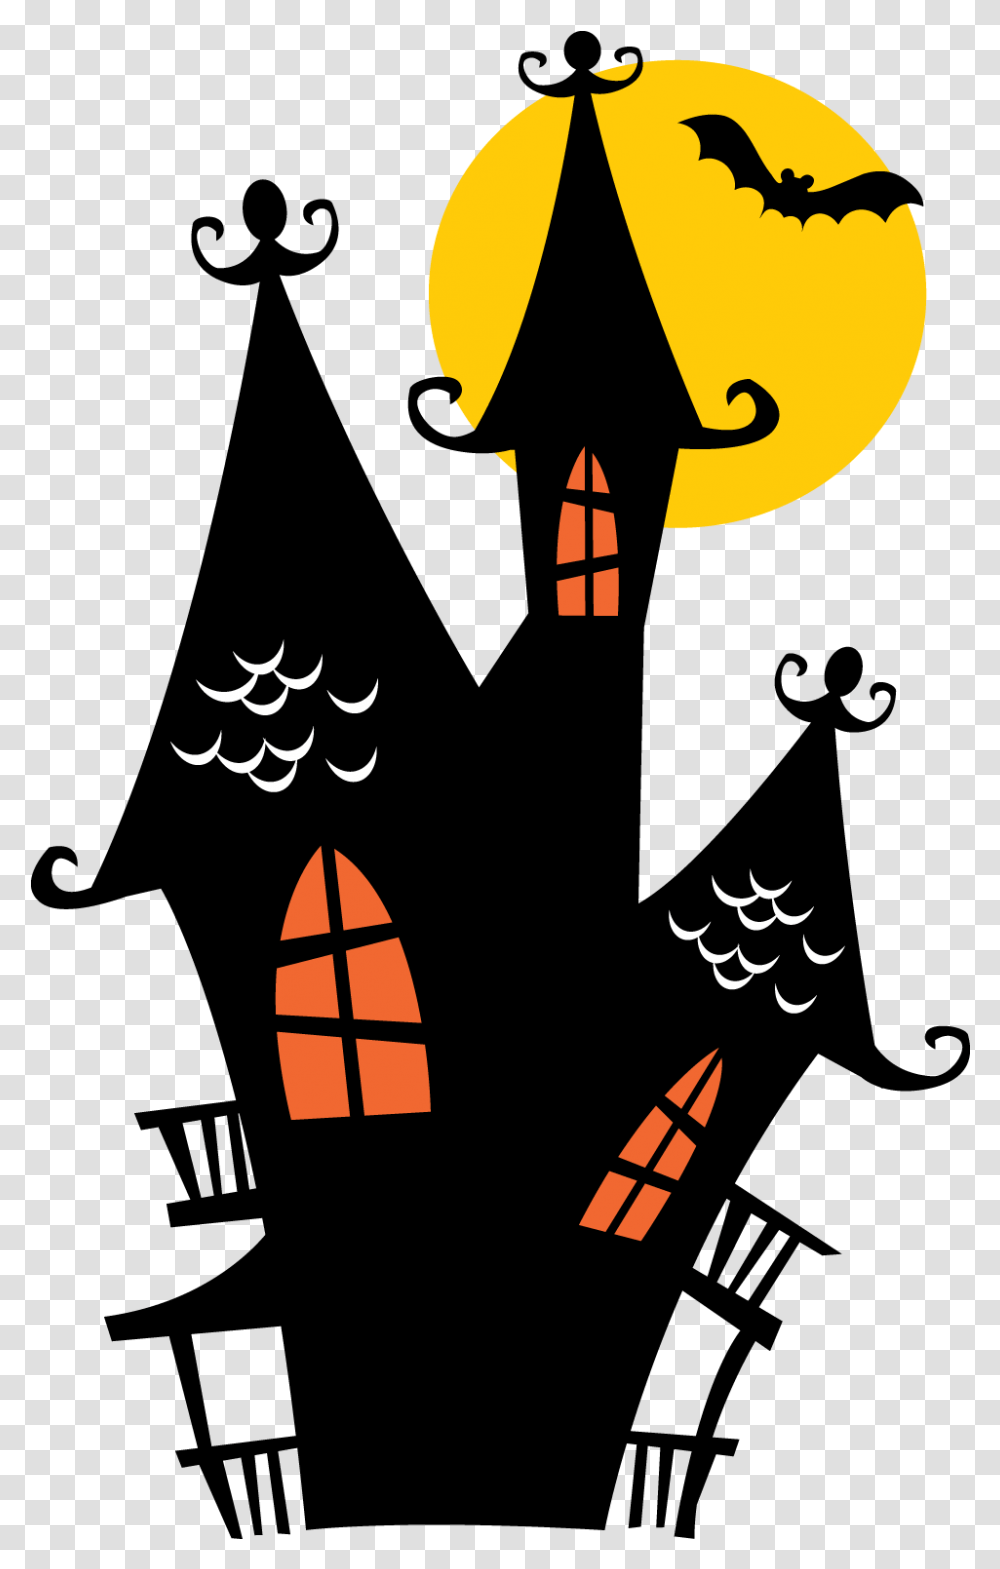 House Jpg Download Cute Files Casa Halloween Desenho, Poster, Silhouette, Art, Text Transparent Png